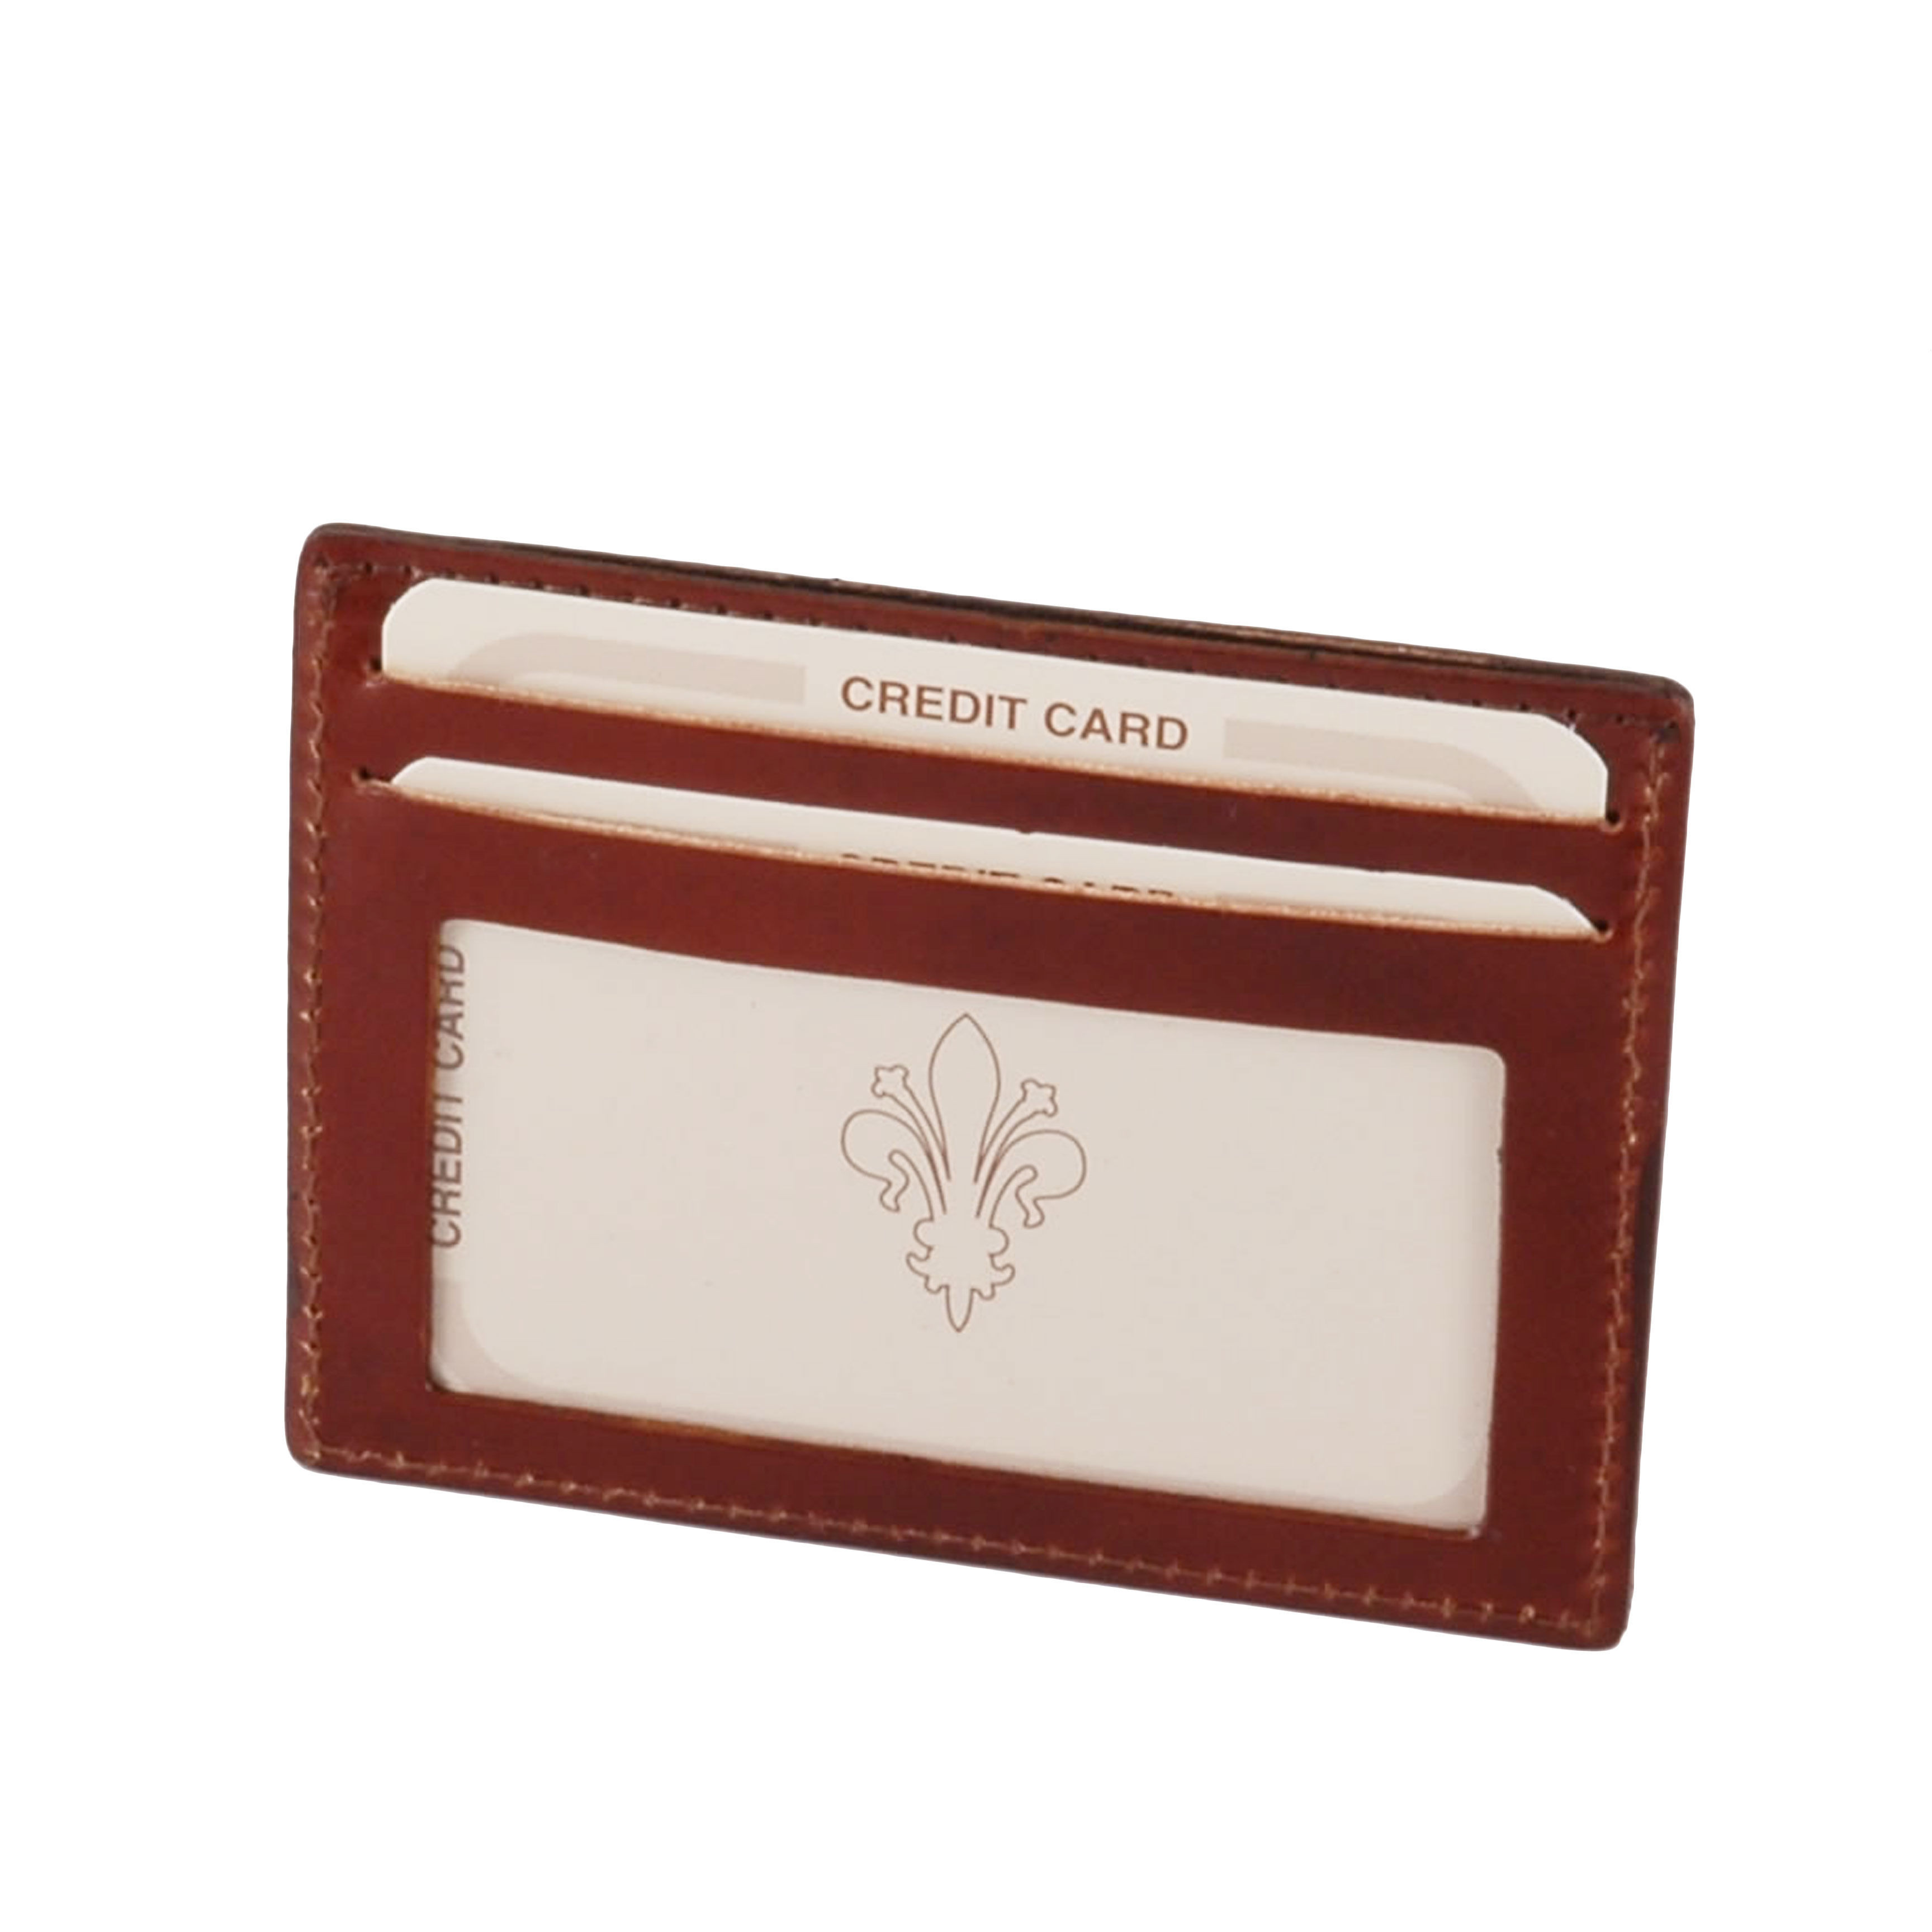 Tuscany Leather Esclusivo portacarte di credito in pelle con finestra  Colore Testa di Moro